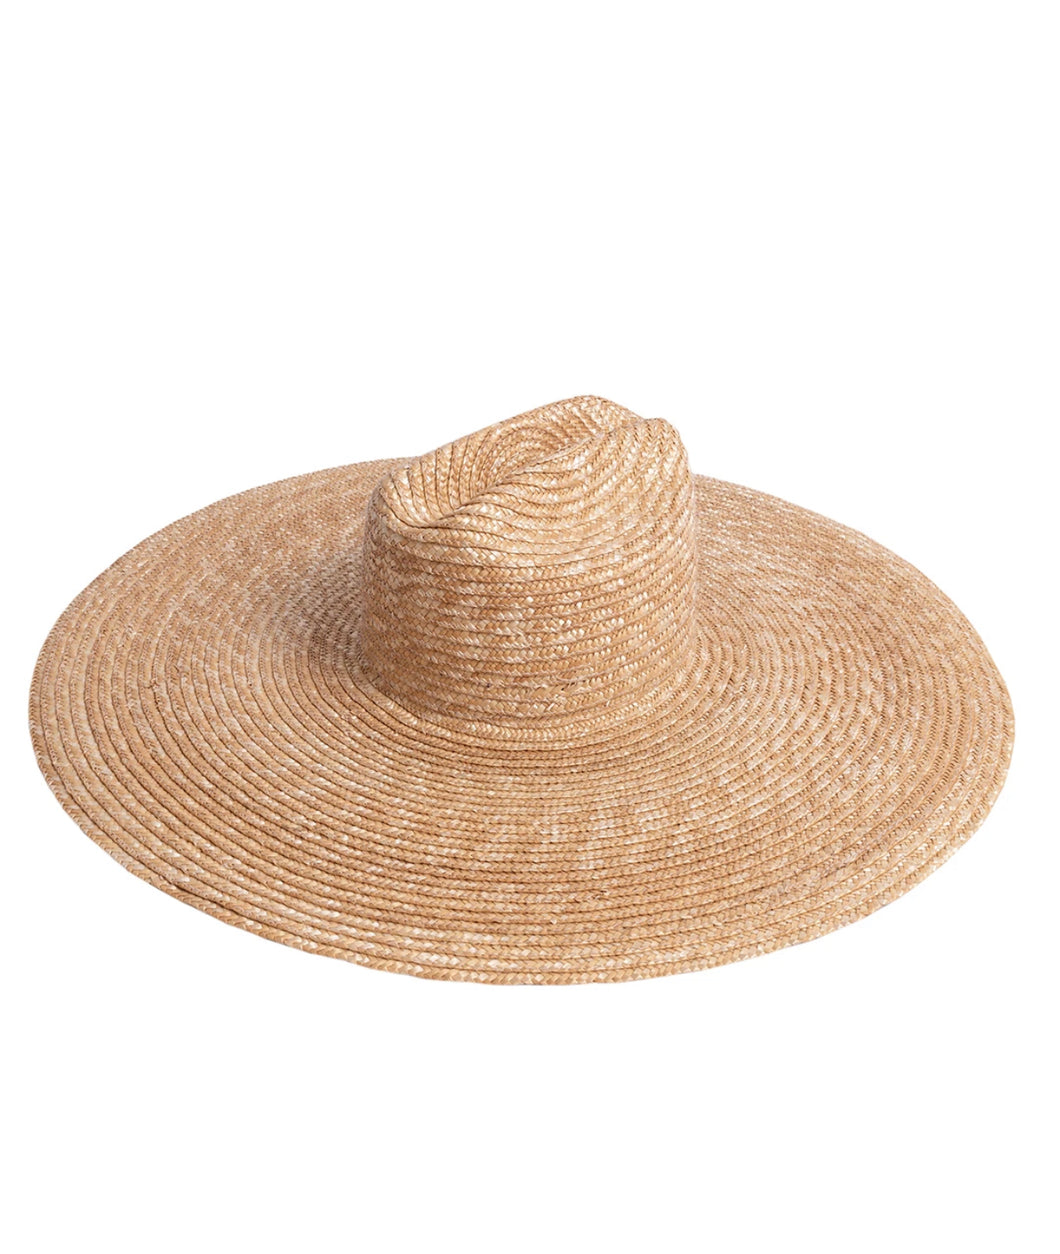 Dallas Crown Wide Brimmed Hat - Plain